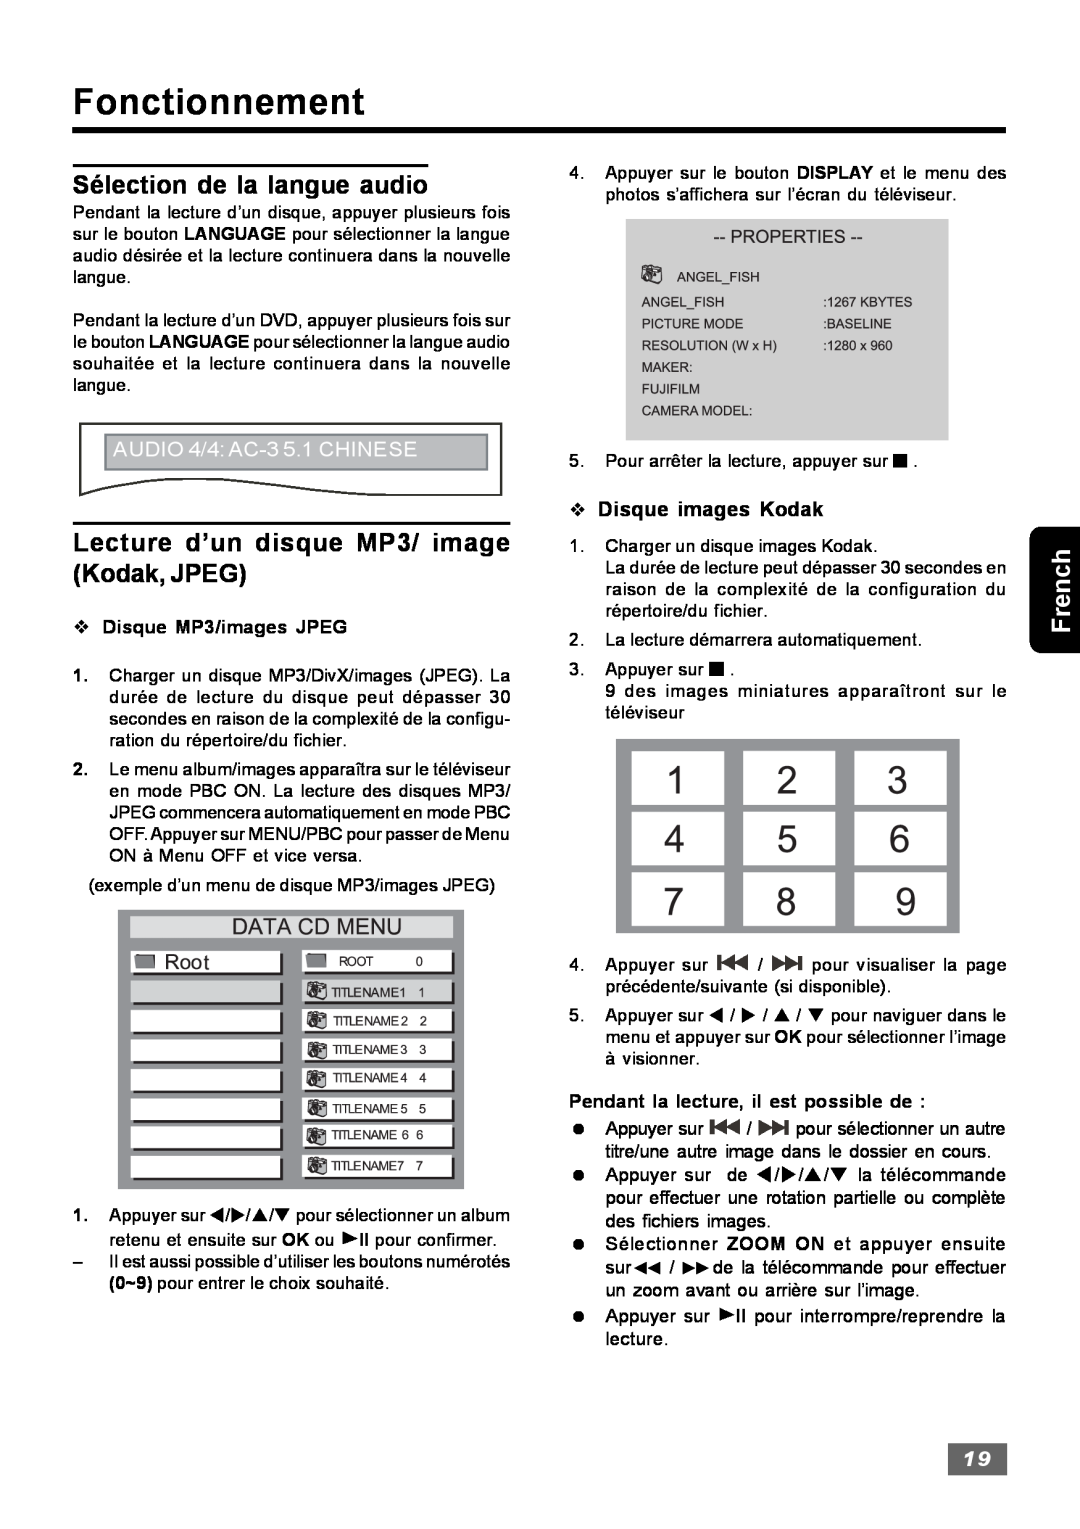 Insignia IS-HTIB102731 Sélection de la langue audio, Lecture d’un disque MP3/ image Kodak, JPEG, Fonctionnement, French 